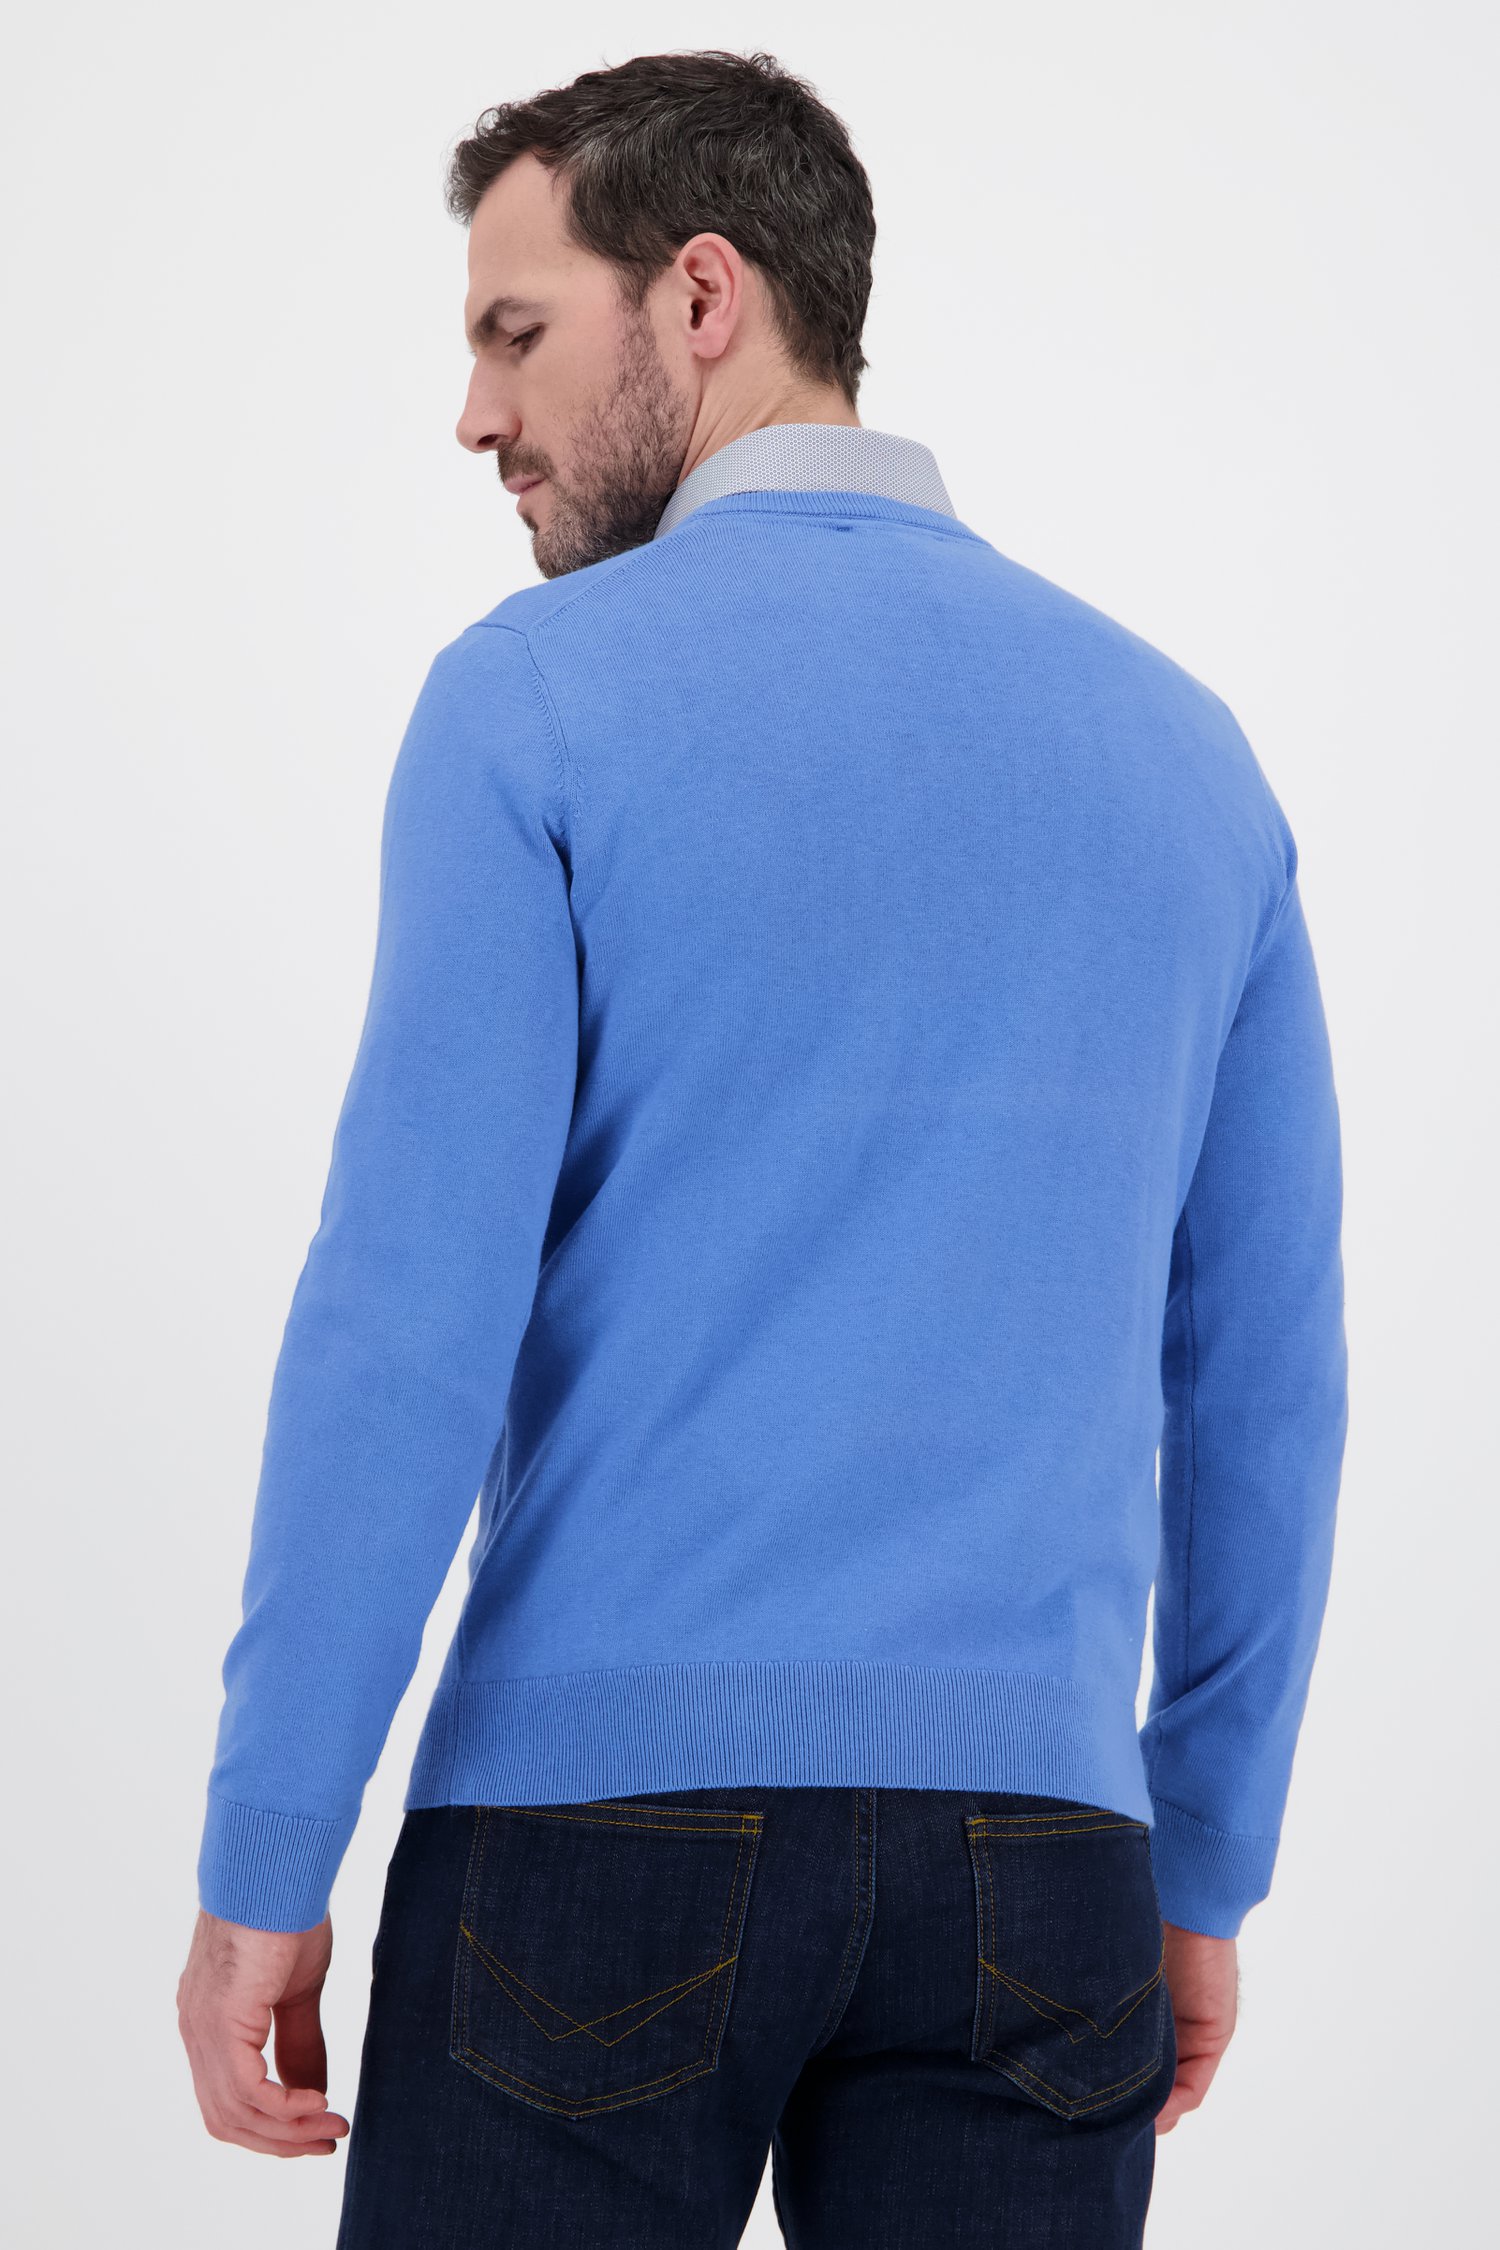 Fijne blauwe trui met ronde hals van Dansaert Black voor Heren